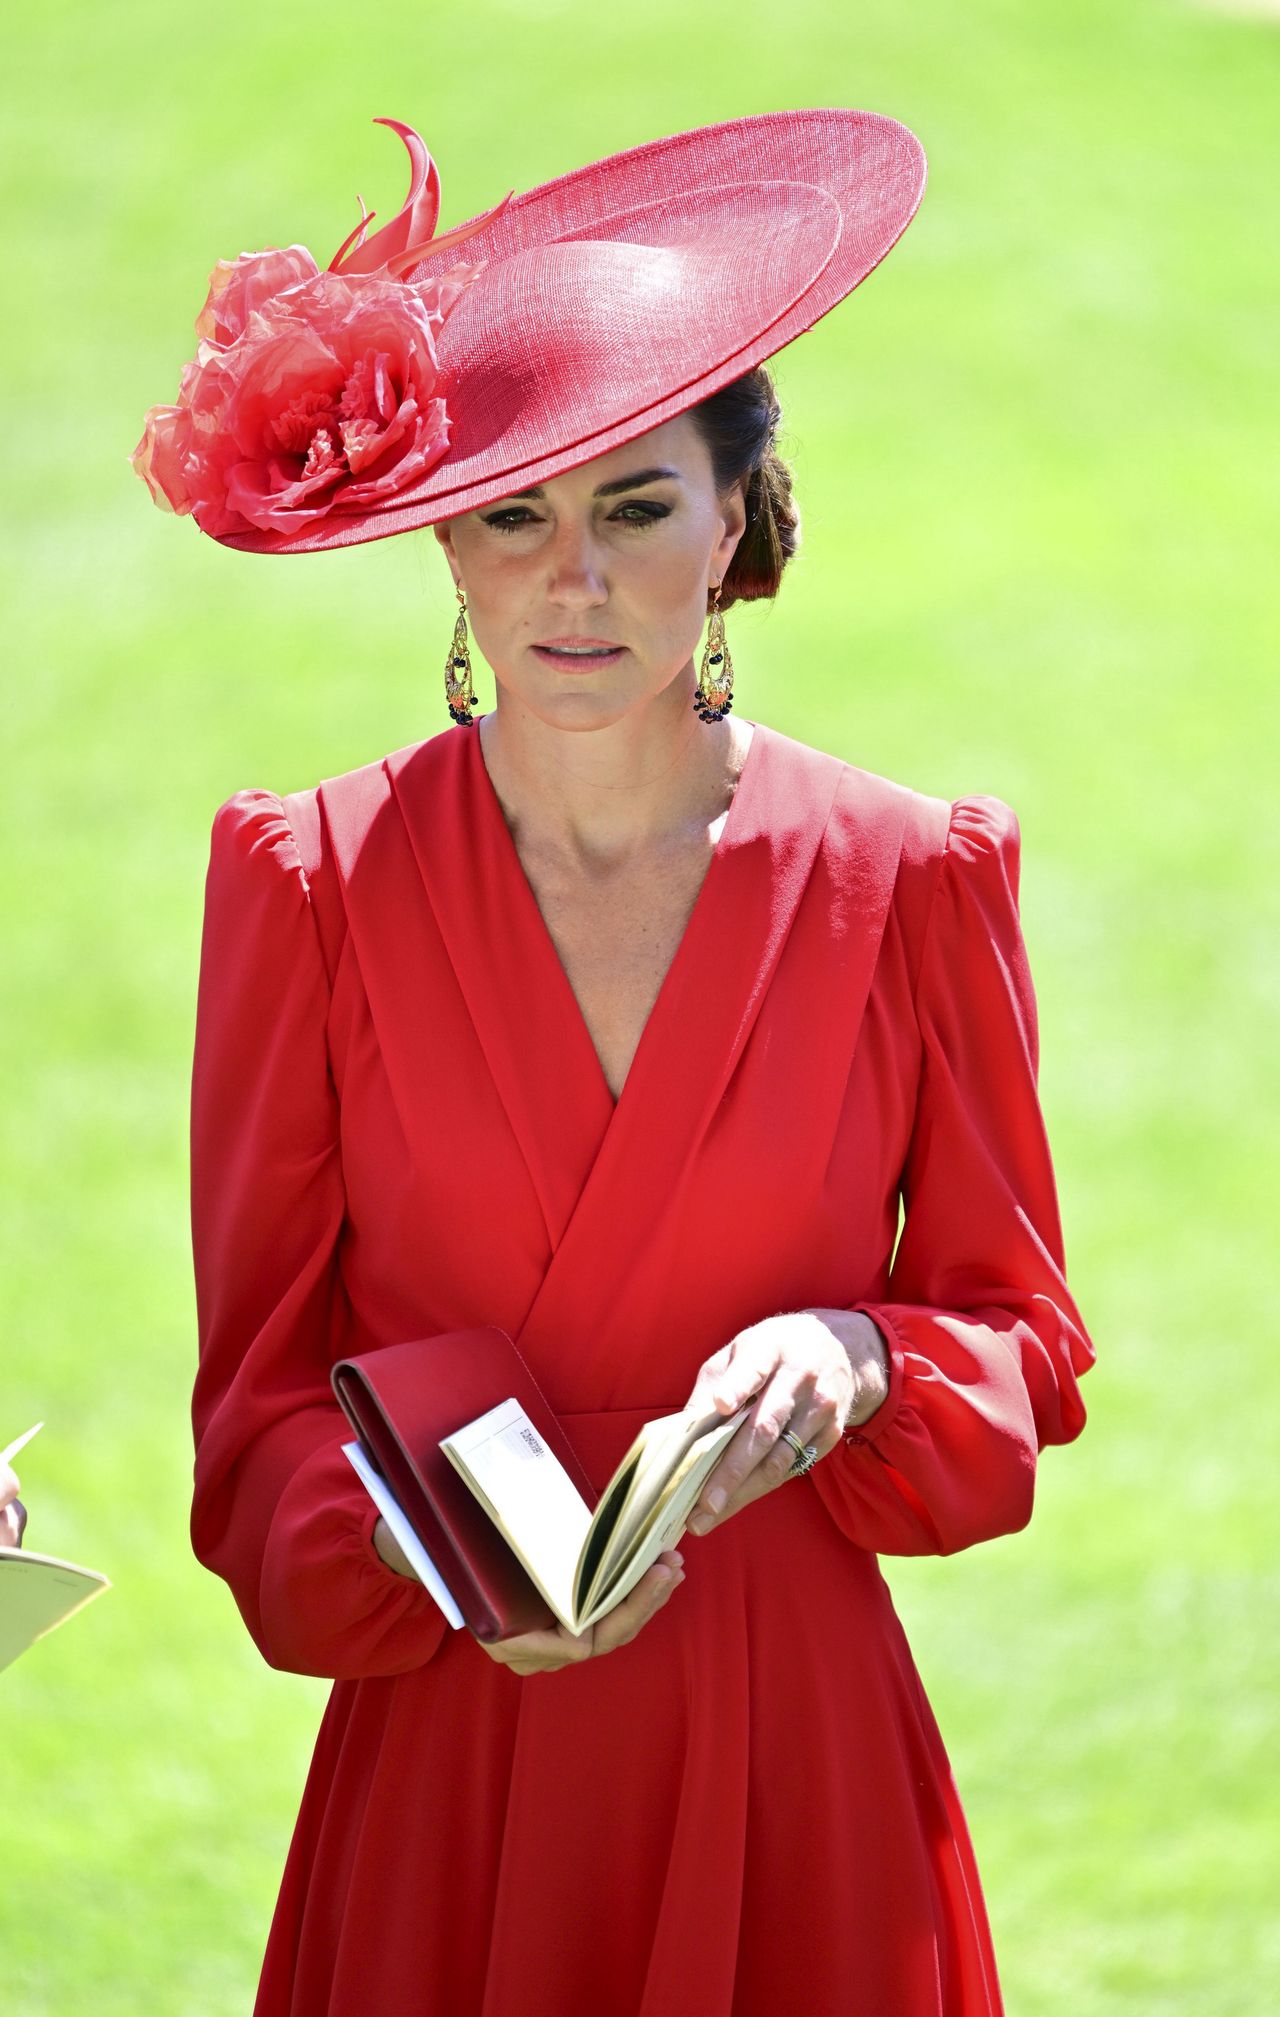 księżna Kate otrzyma nowe uprawnienia?